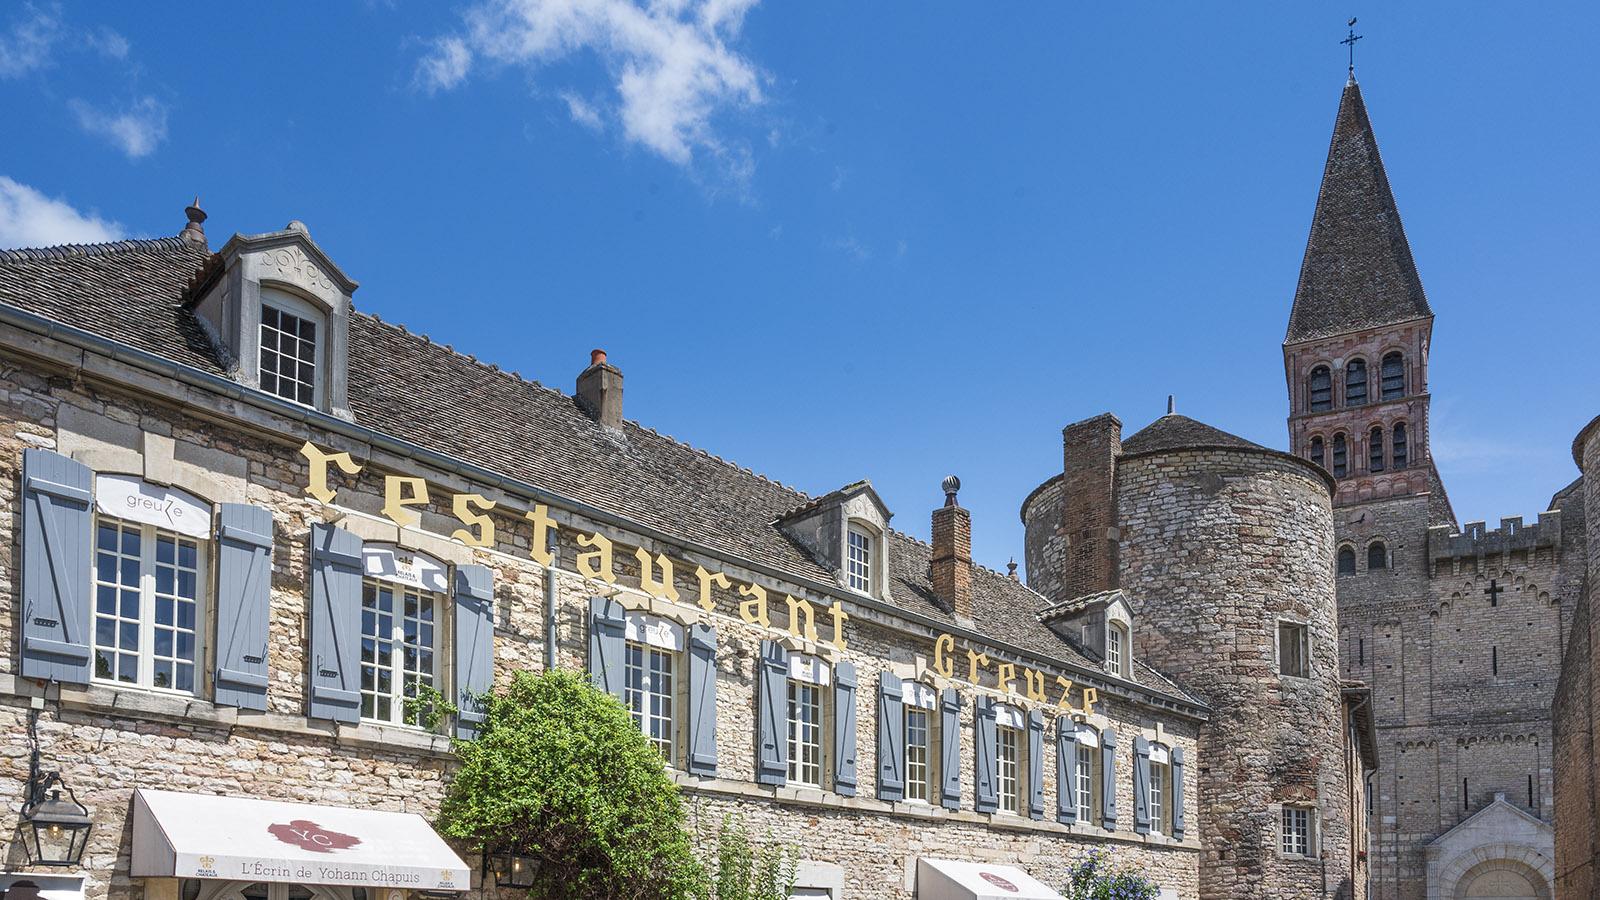 Das Restaurant Gleize an der Abtei von Tournus schmückt ein Michelin-Stern. Foto: Hilke Maunder